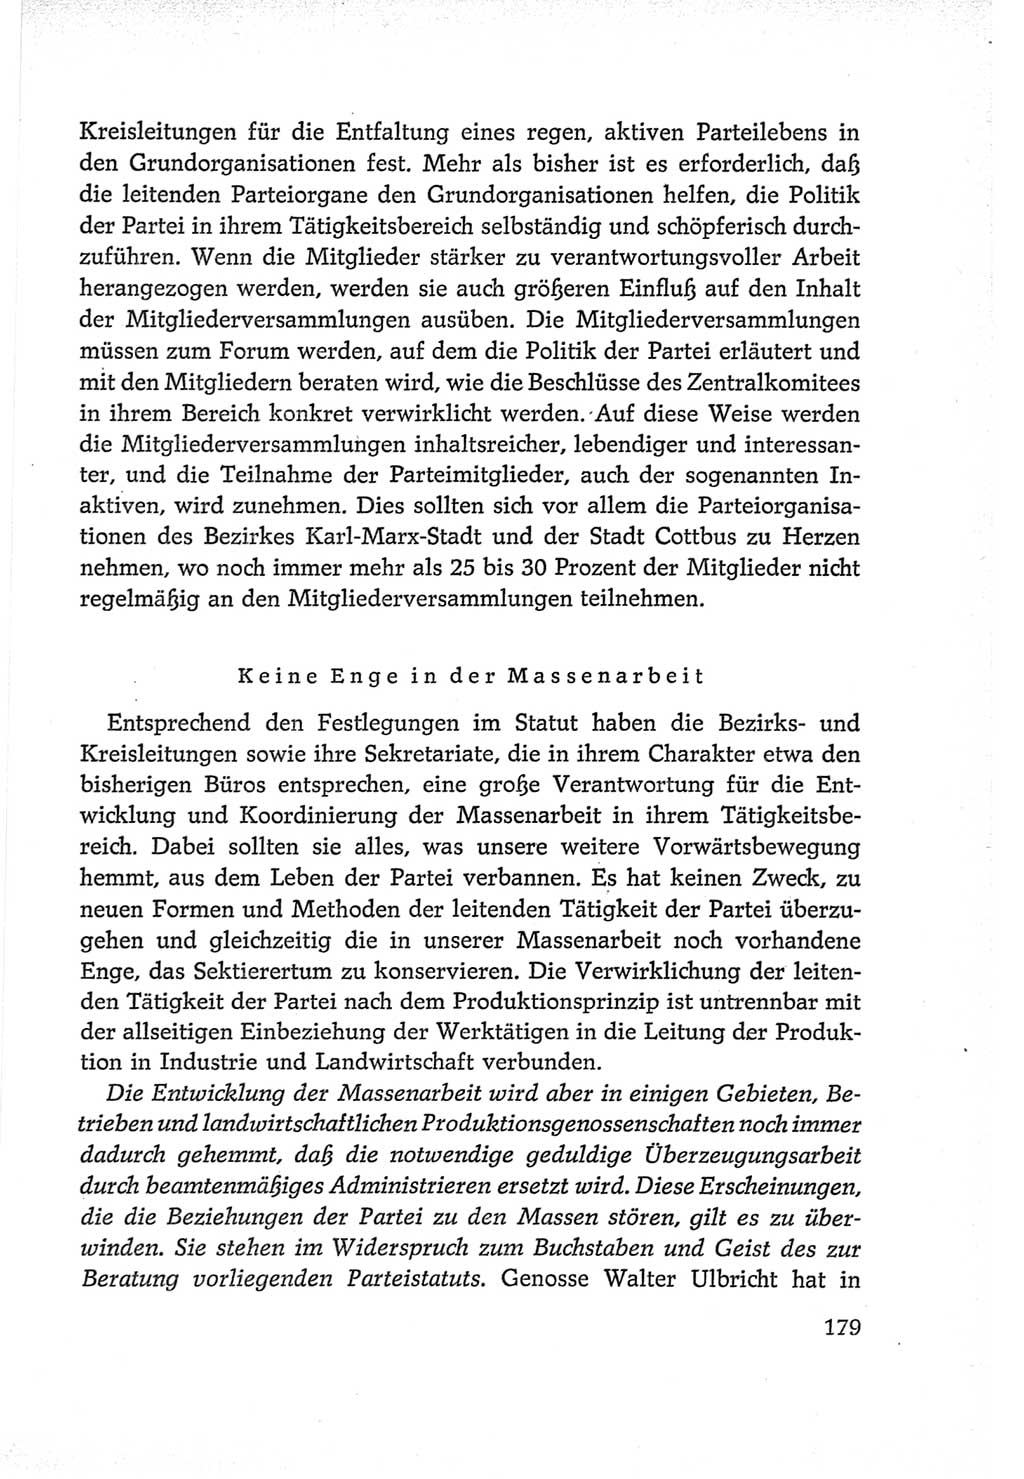 Protokoll der Verhandlungen des Ⅵ. Parteitages der Sozialistischen Einheitspartei Deutschlands (SED) [Deutsche Demokratische Republik (DDR)] 1963, Band Ⅱ, Seite 179 (Prot. Verh. Ⅵ. PT SED DDR 1963, Bd. Ⅱ, S. 179)